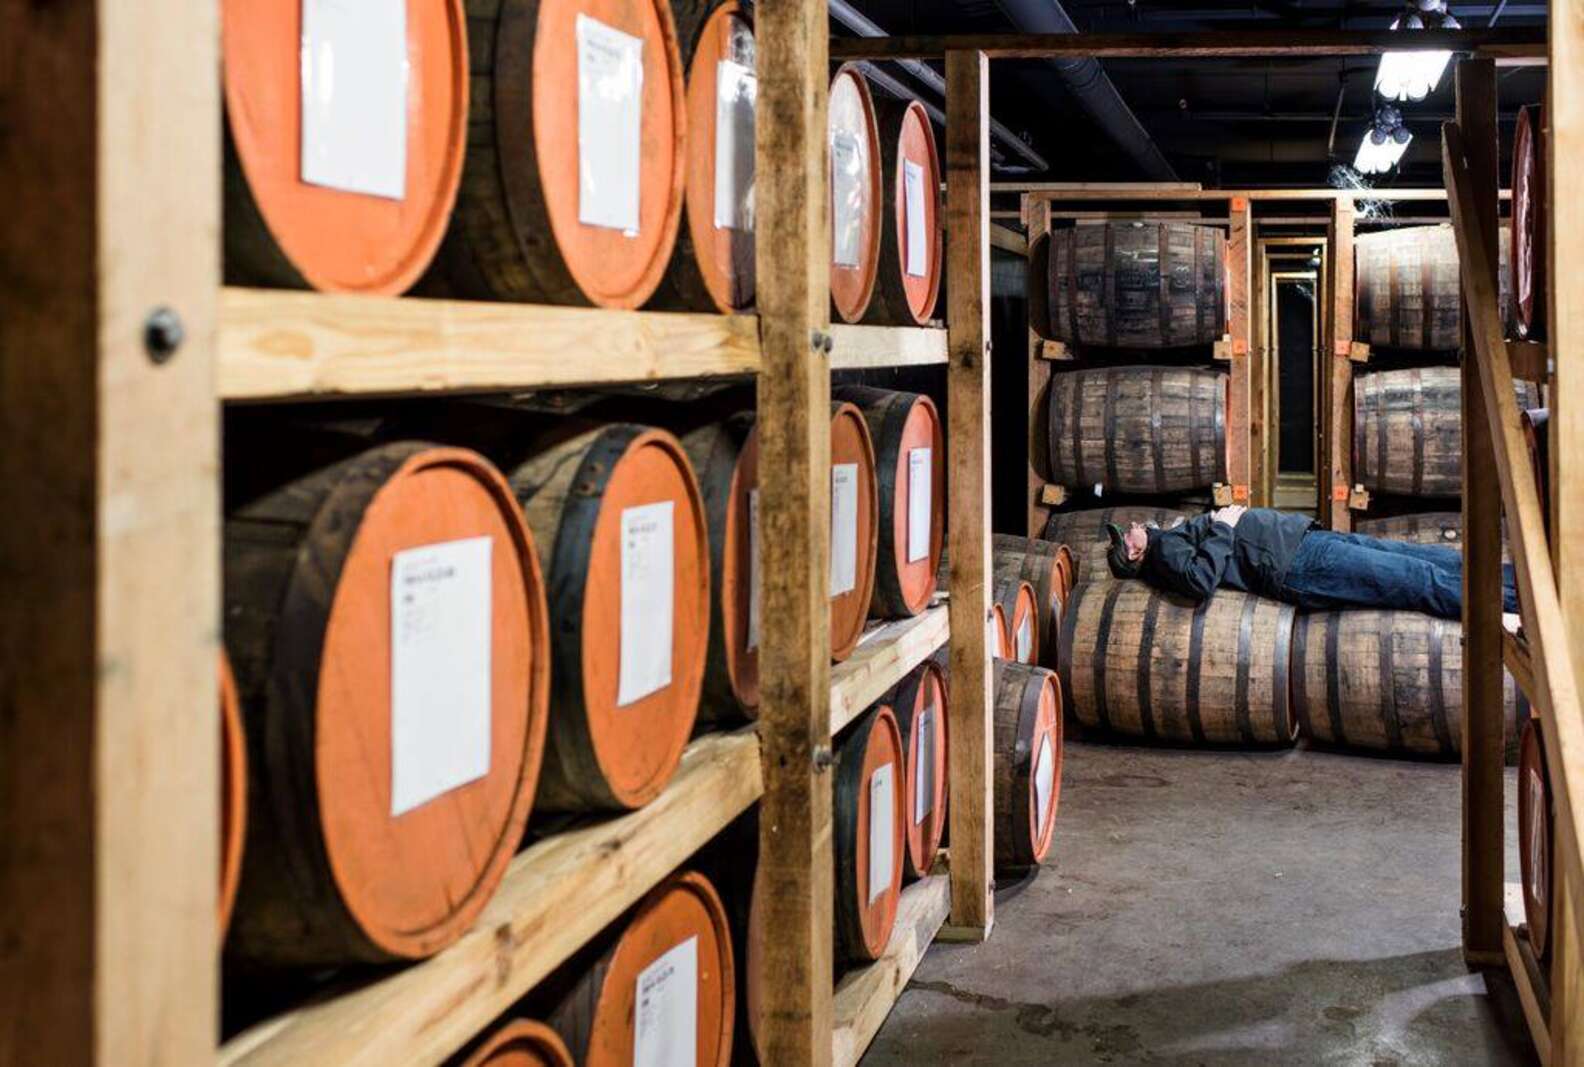 America's 17 Best Craft Distilleries Thrillist